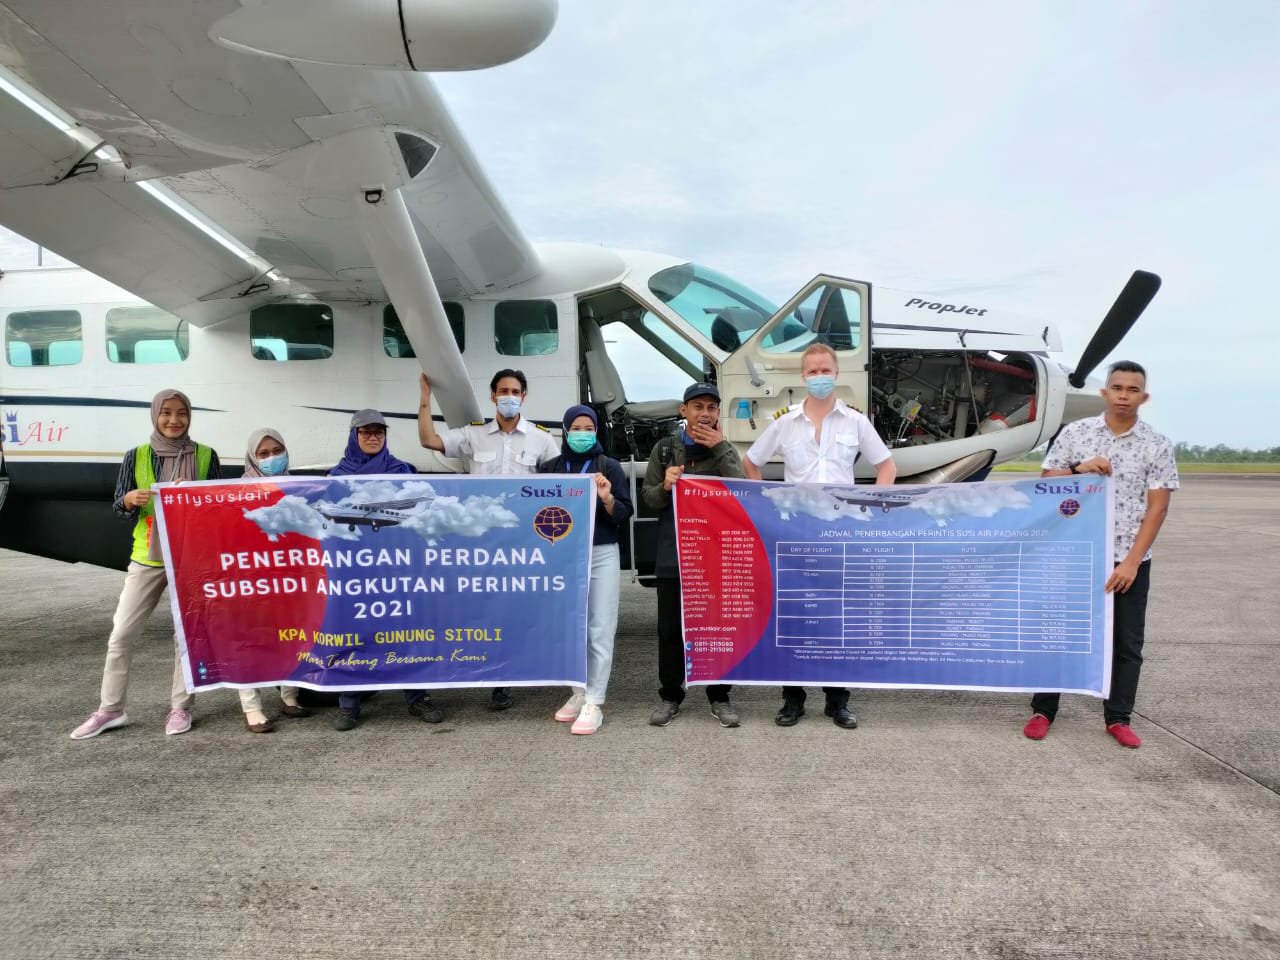 Penerbangan Perdana Angkutan Perintis Korwil Gunung Sitoli - Nusantara Info